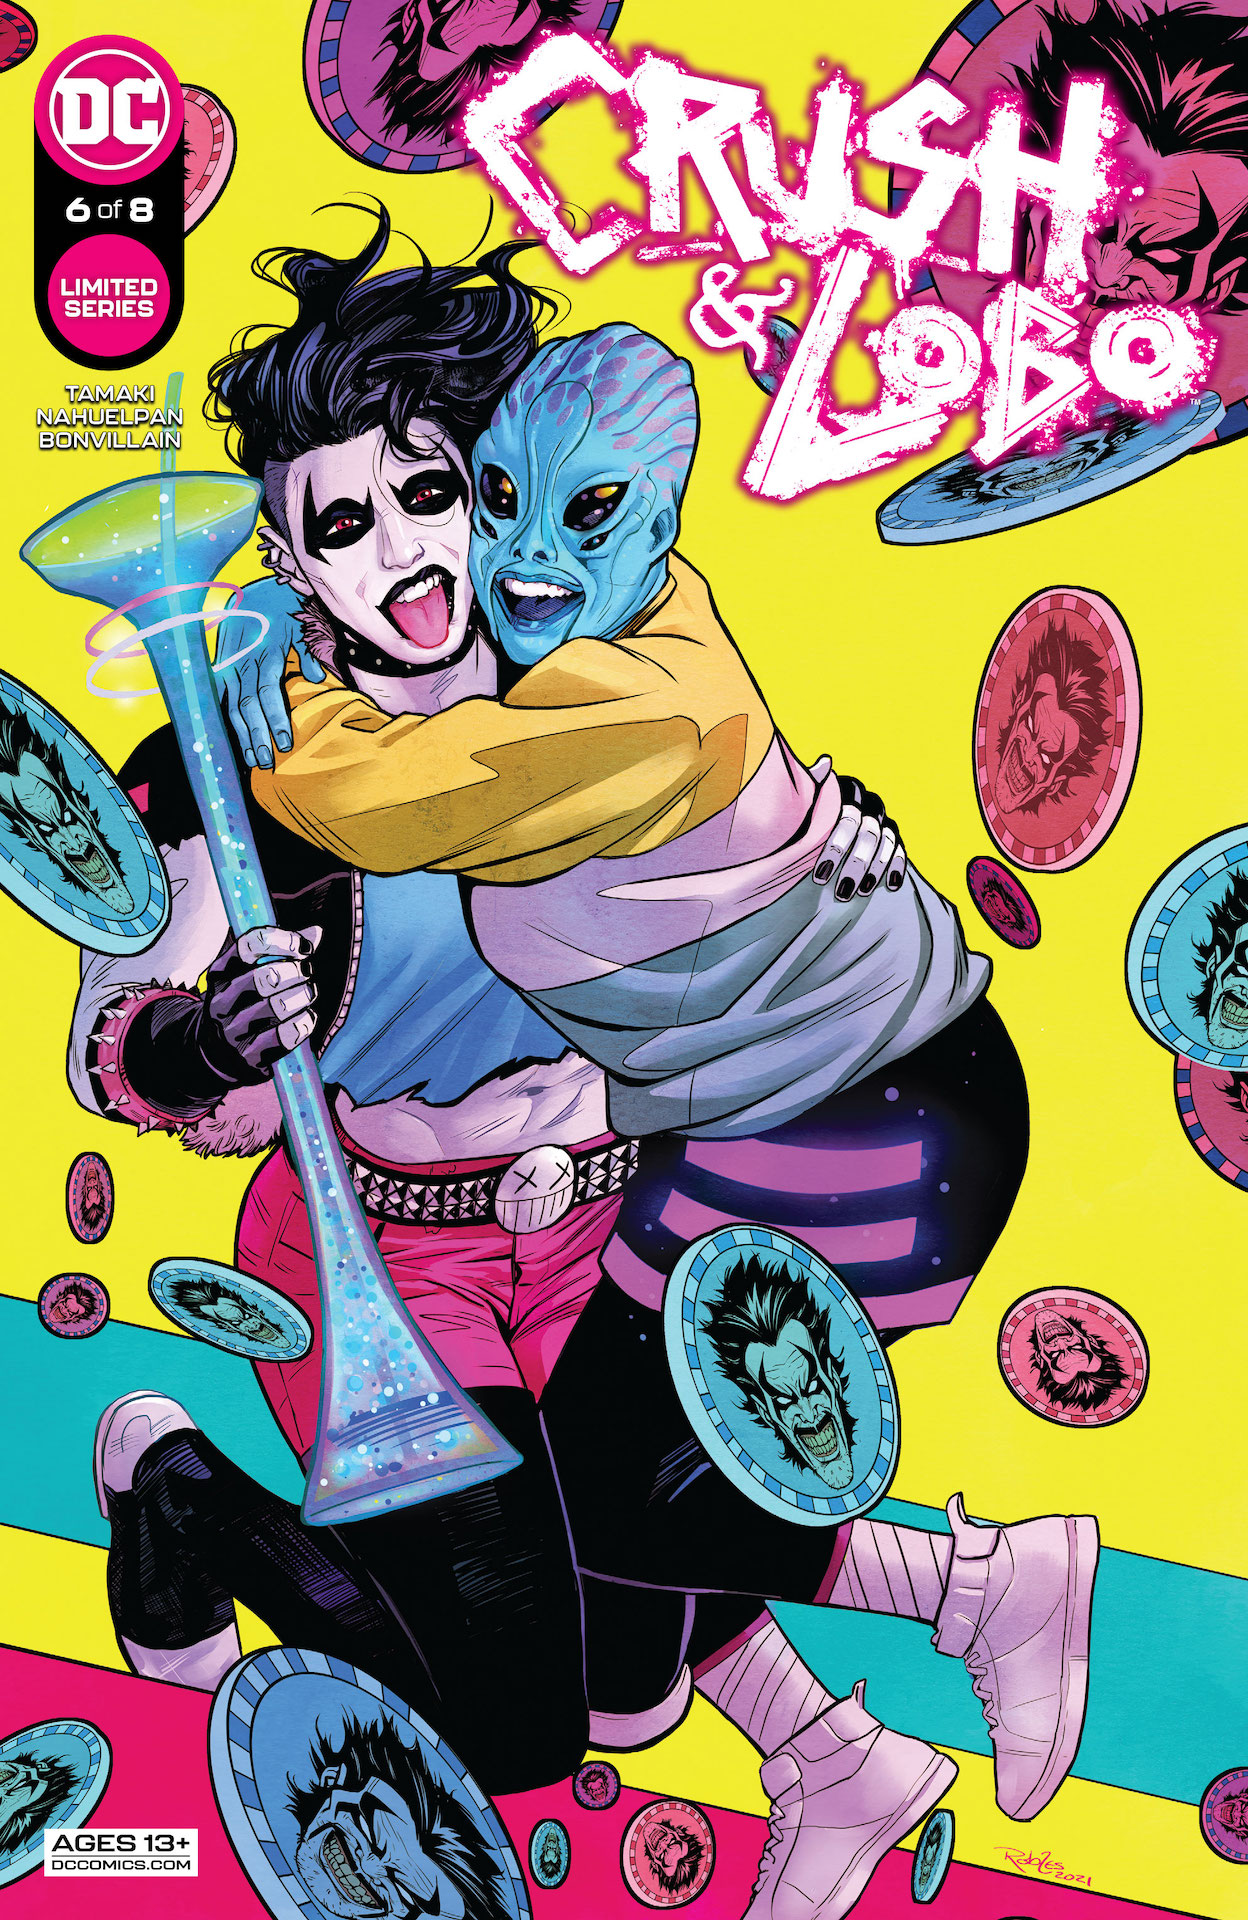 DC Preview: Crush & Lobo #6